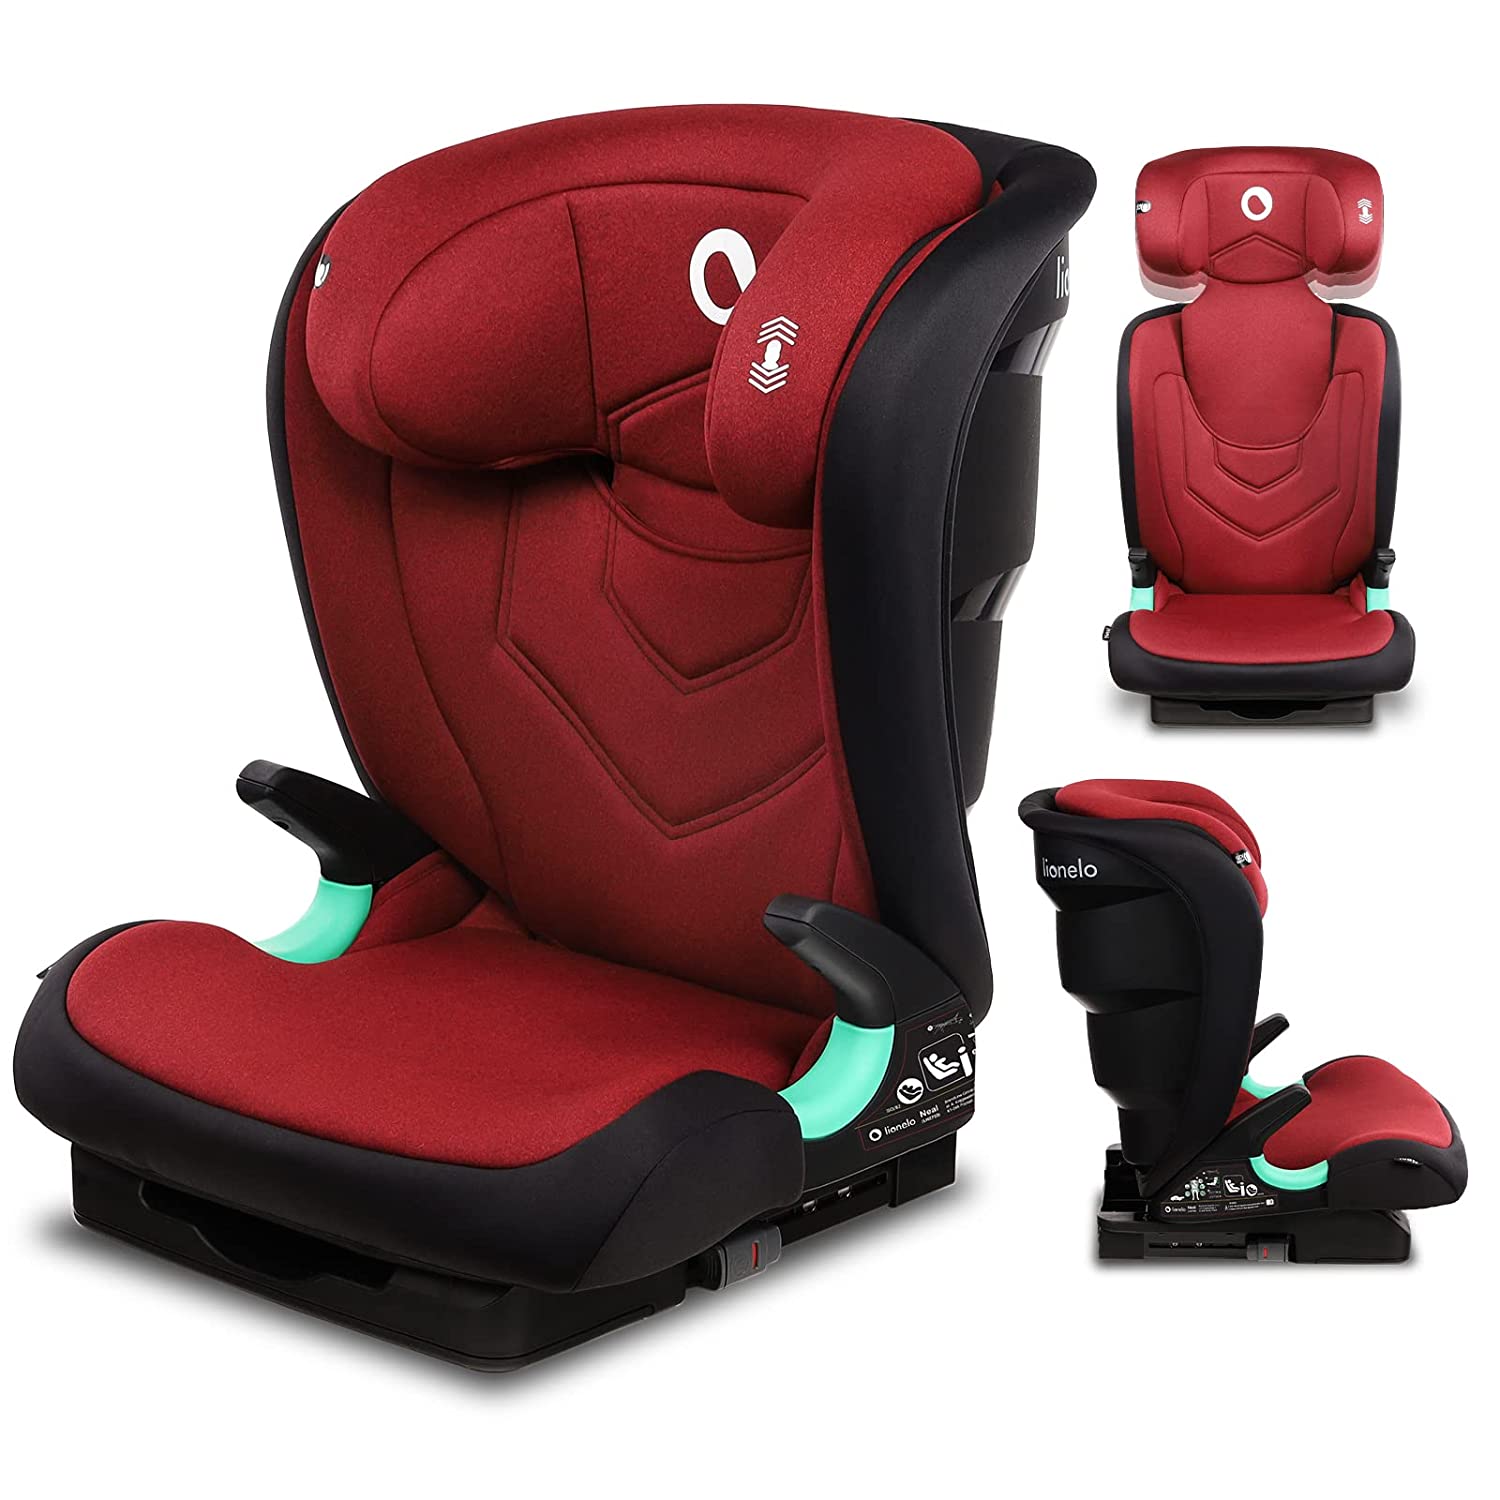 Lionelo Neal Child Seat 15-36 kg Isofix Side Protectors Marking i-Size 3-Way Adjustable Backrest Height Adjustable Headrest Ventilation System (Red)